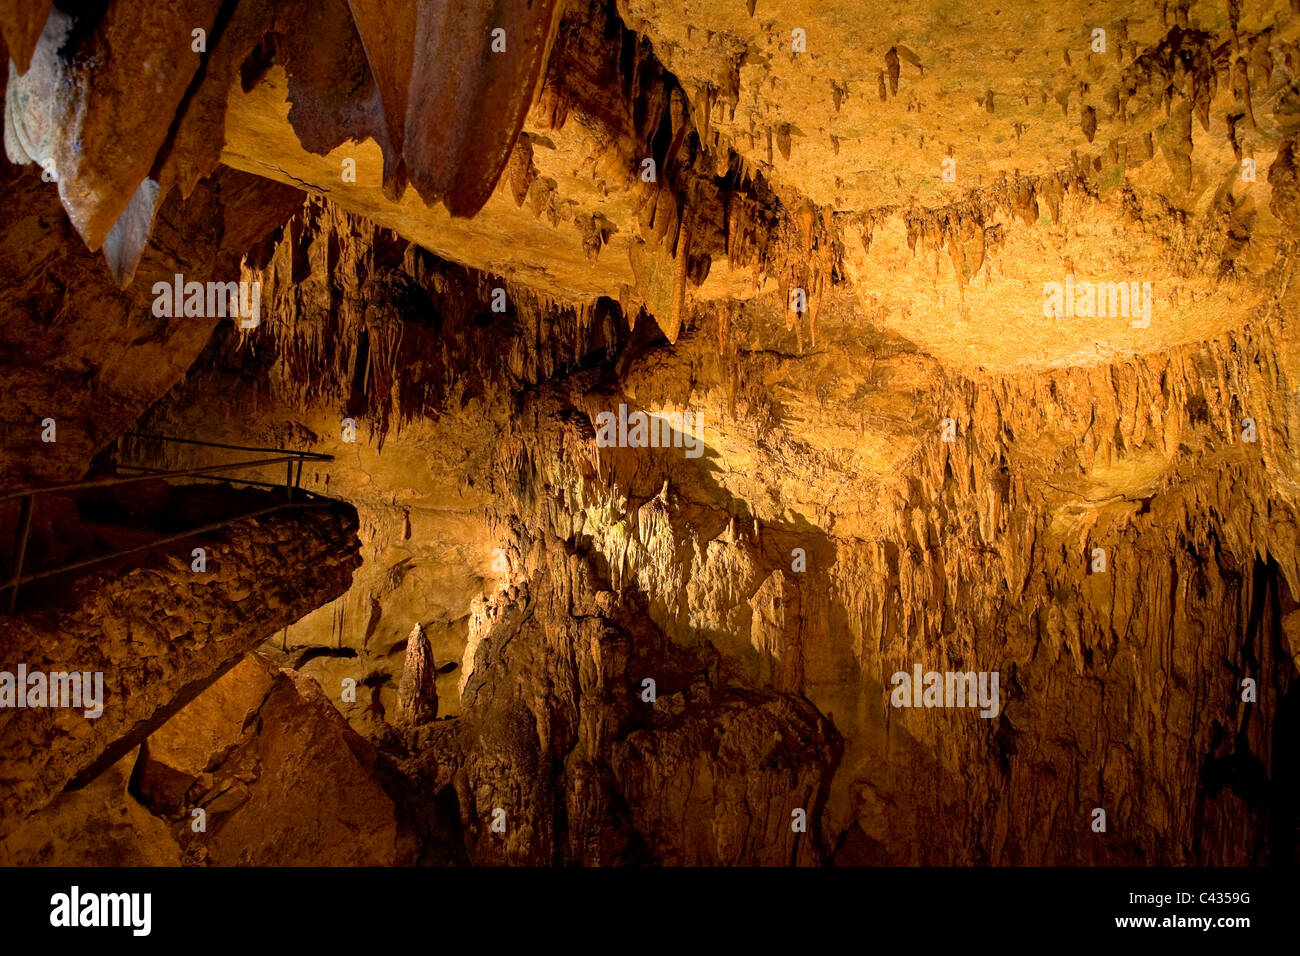 Usa, Caribbean, Puerto Rico, Central Mountains, Parque de las Cavernas del Rio Camuy, Cueva Catedral (Cathedral Cave) Stock Photo